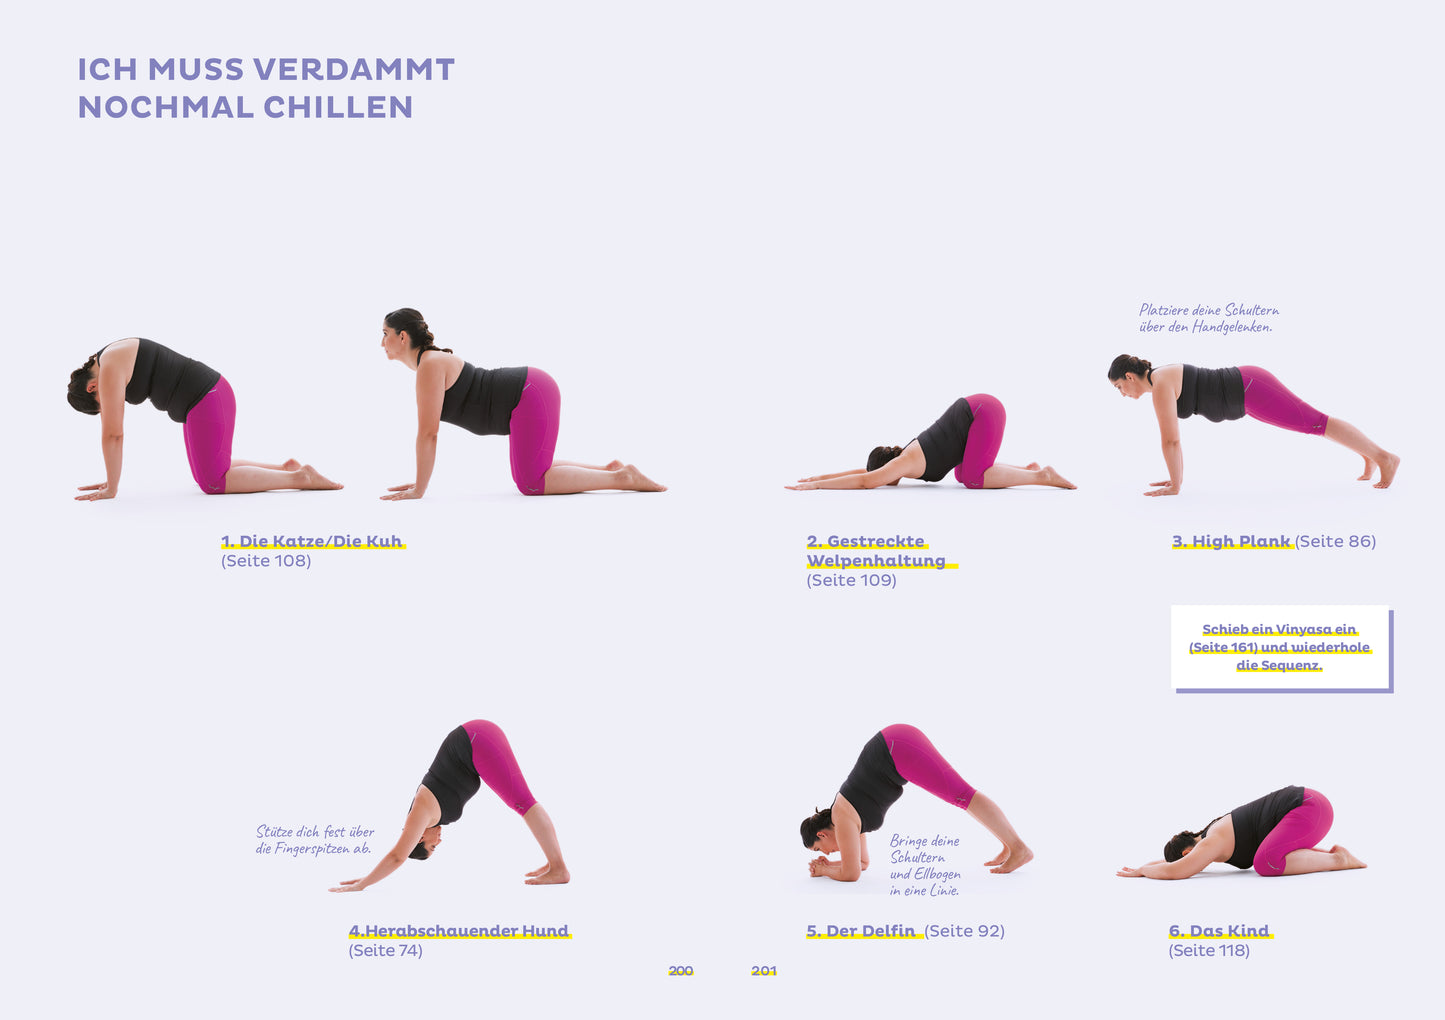 Every Body Yoga - Jessamyn Stanley, Miriam Koch - Sachbuch - Yoga für alle!